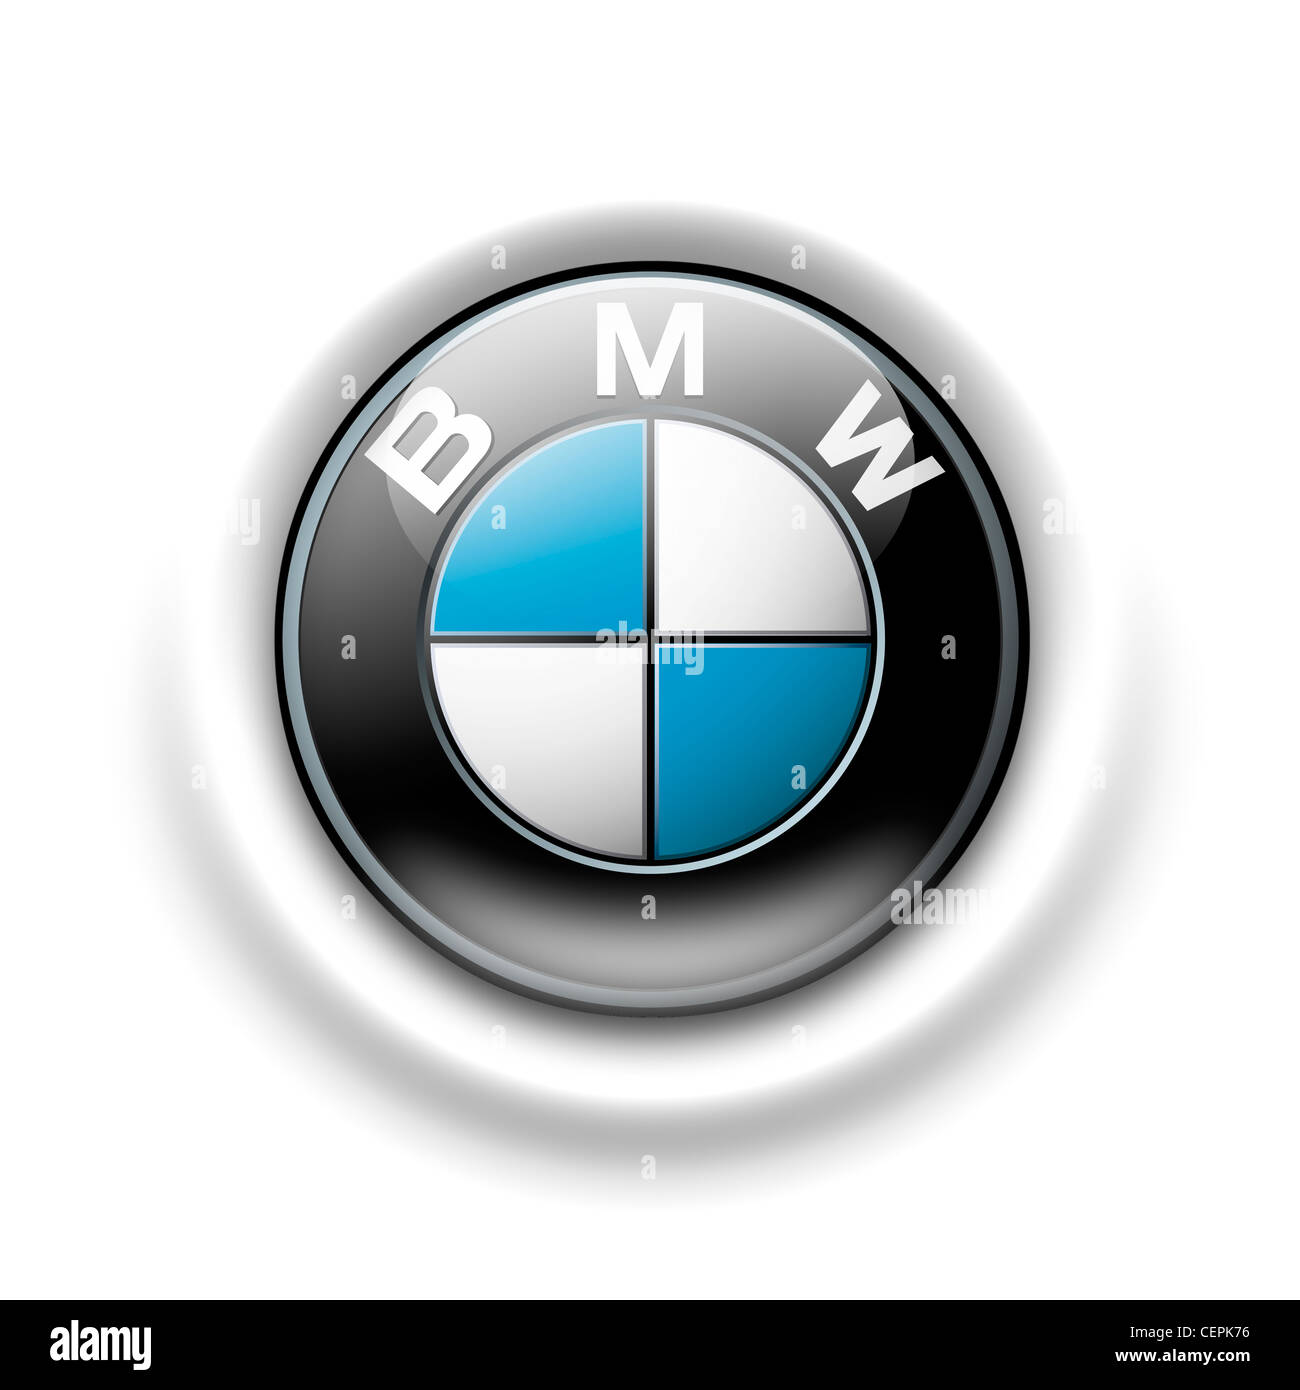 BMW logo symbol icon Stock Photo